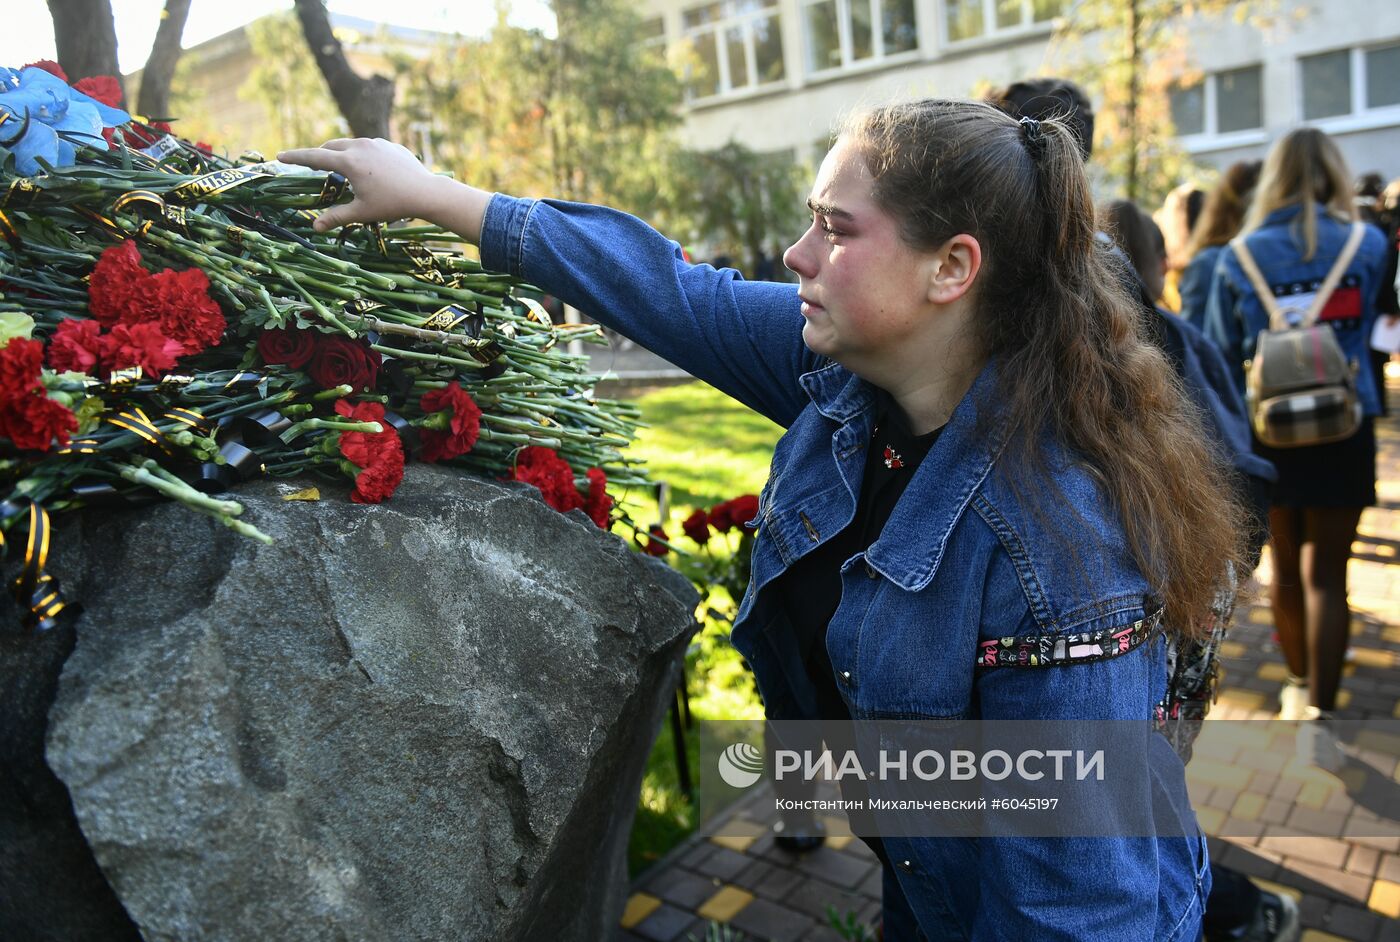 Годовщина трагедии в Керченском политехническом колледже